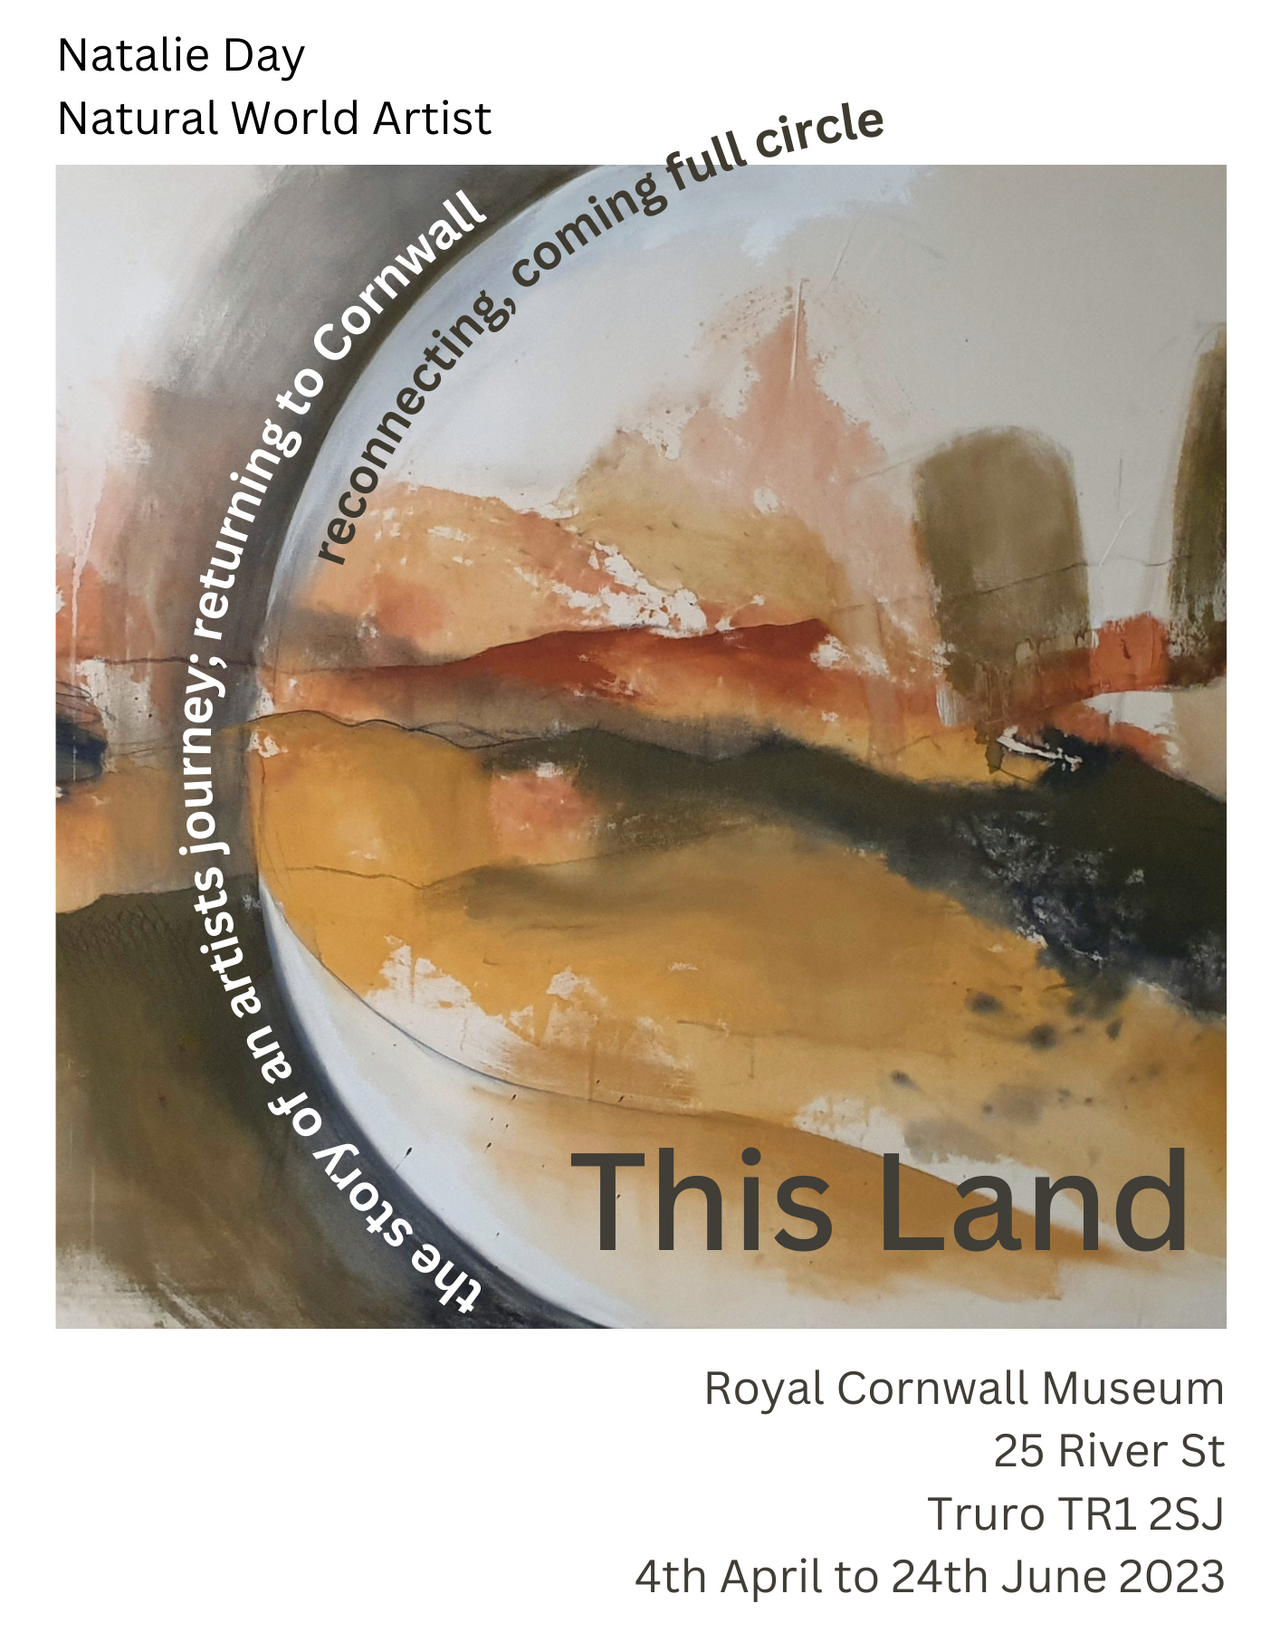 This Land at Royal Cornwall Museum